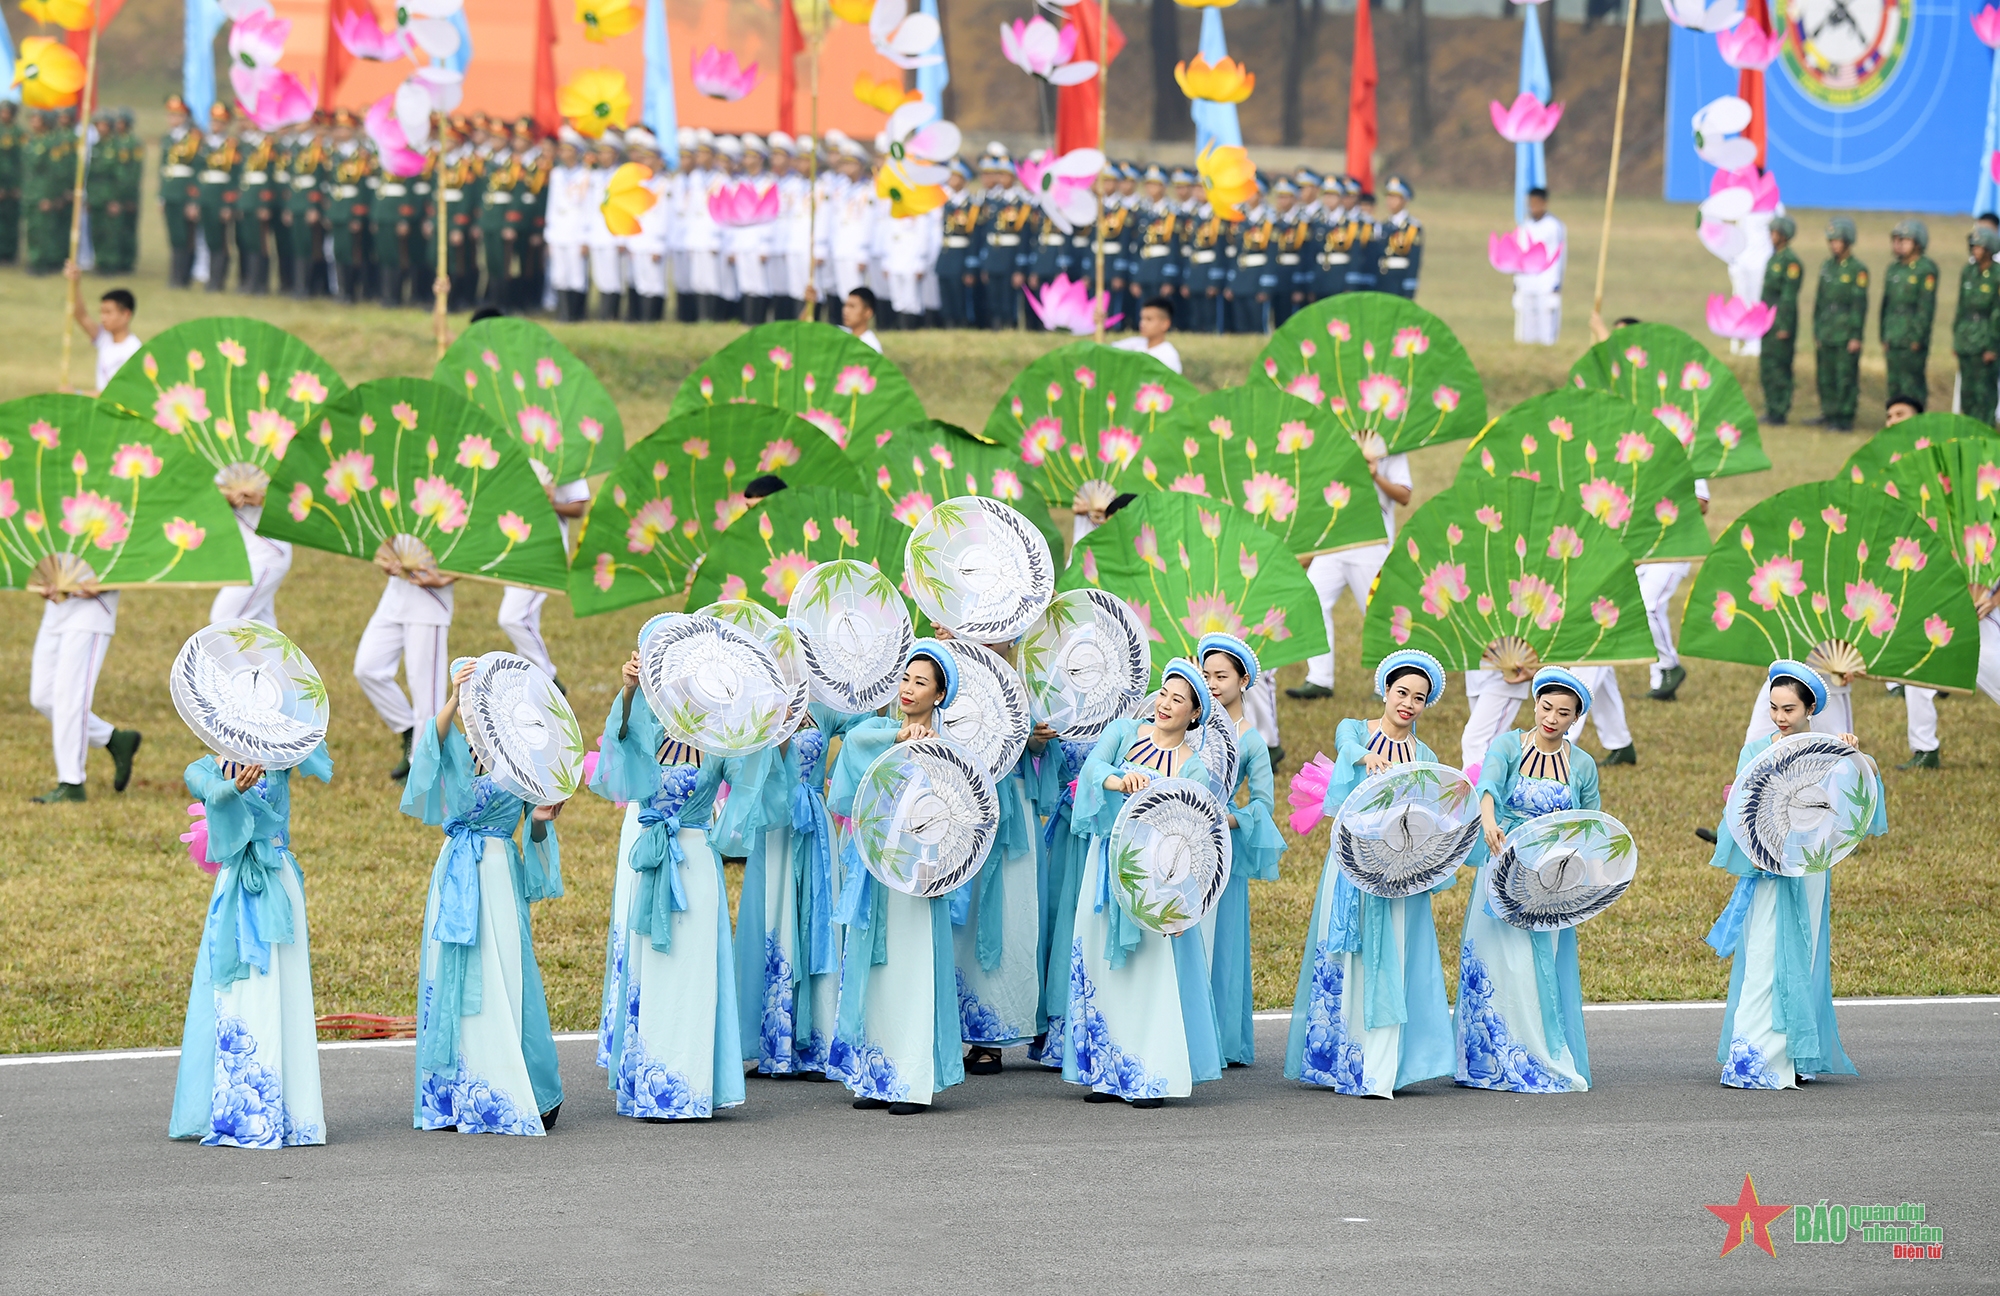 Ấn tượng không gian văn hóa ASEAN tại lễ khai mạc AARM-30